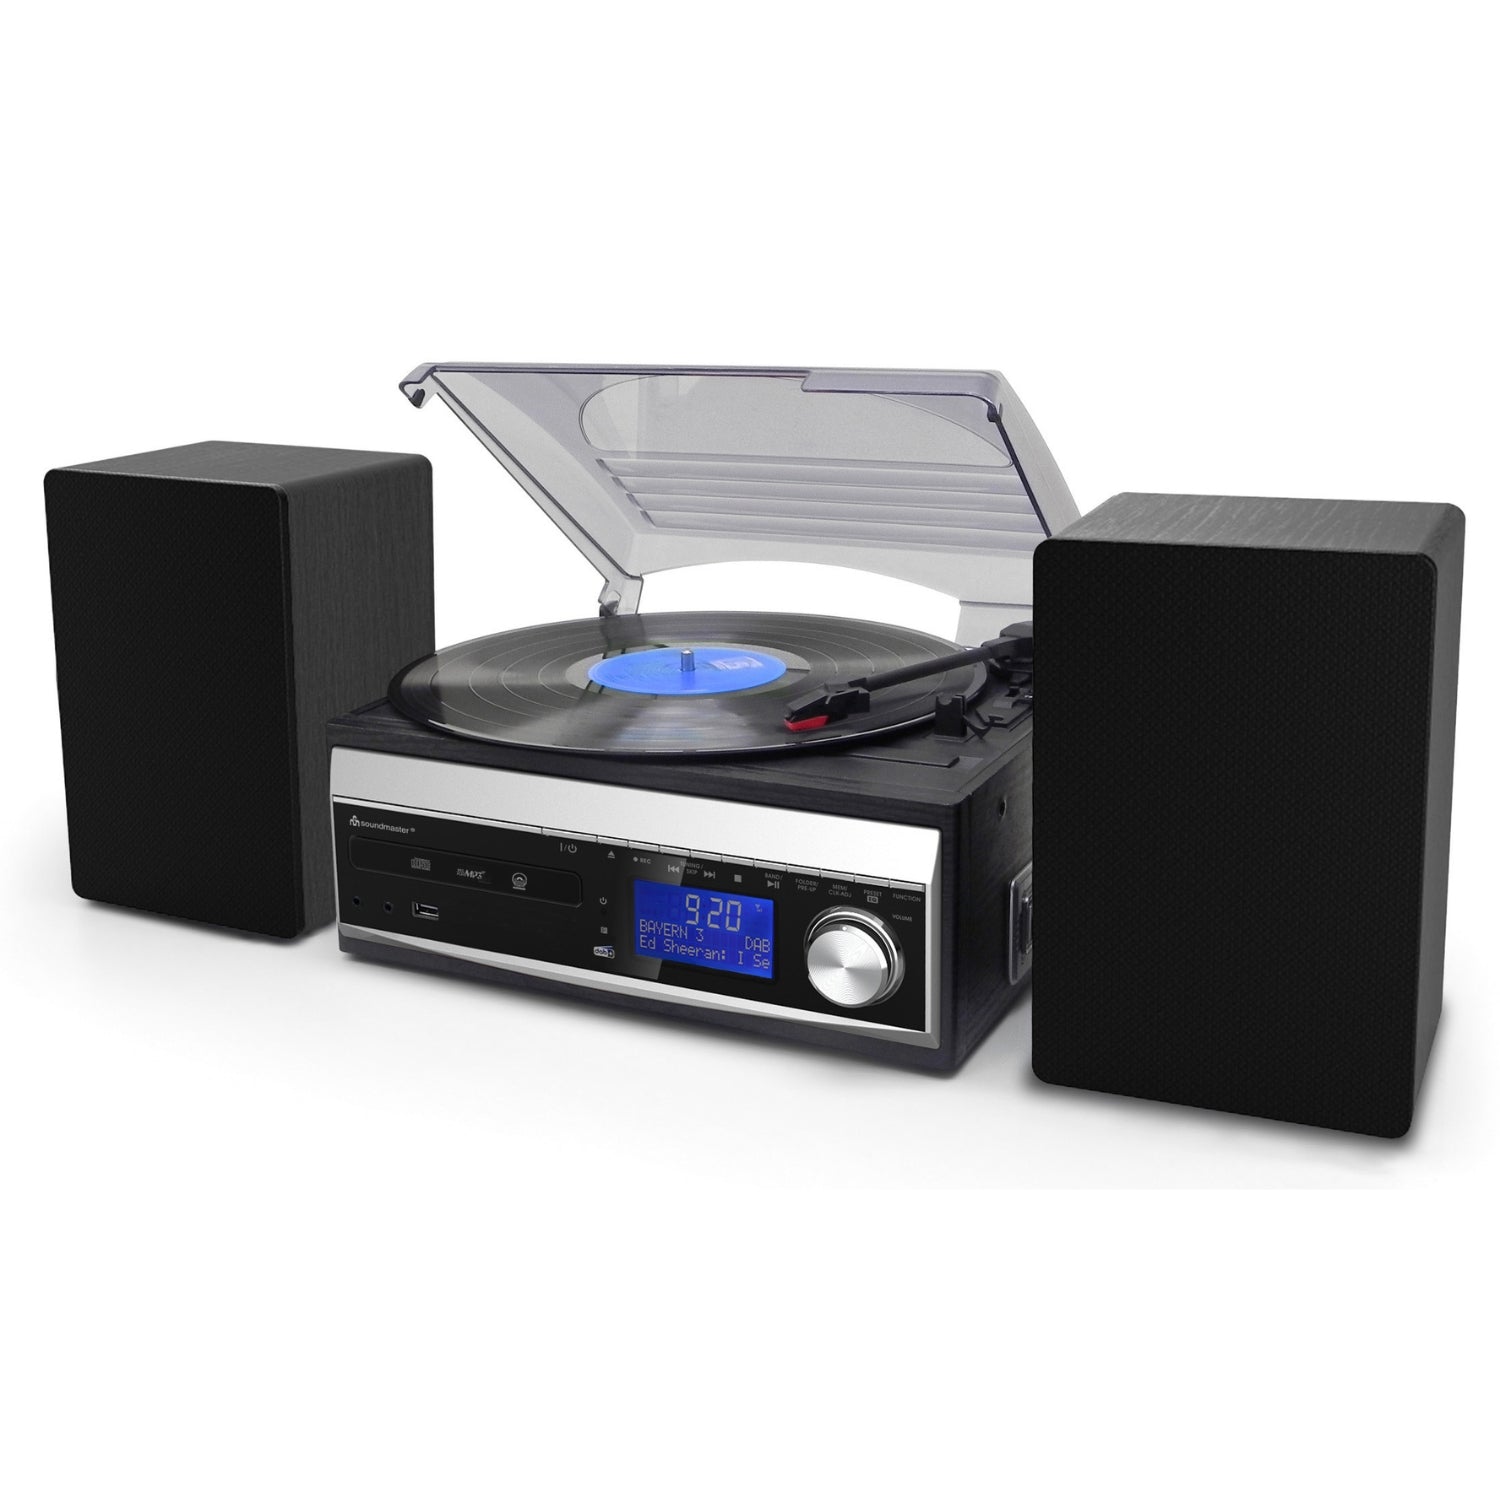 Soundmaster MCD1820SW DAB+ chaîne stéréo compacte lecteur CD platine vinyle encodage USB SD MP3